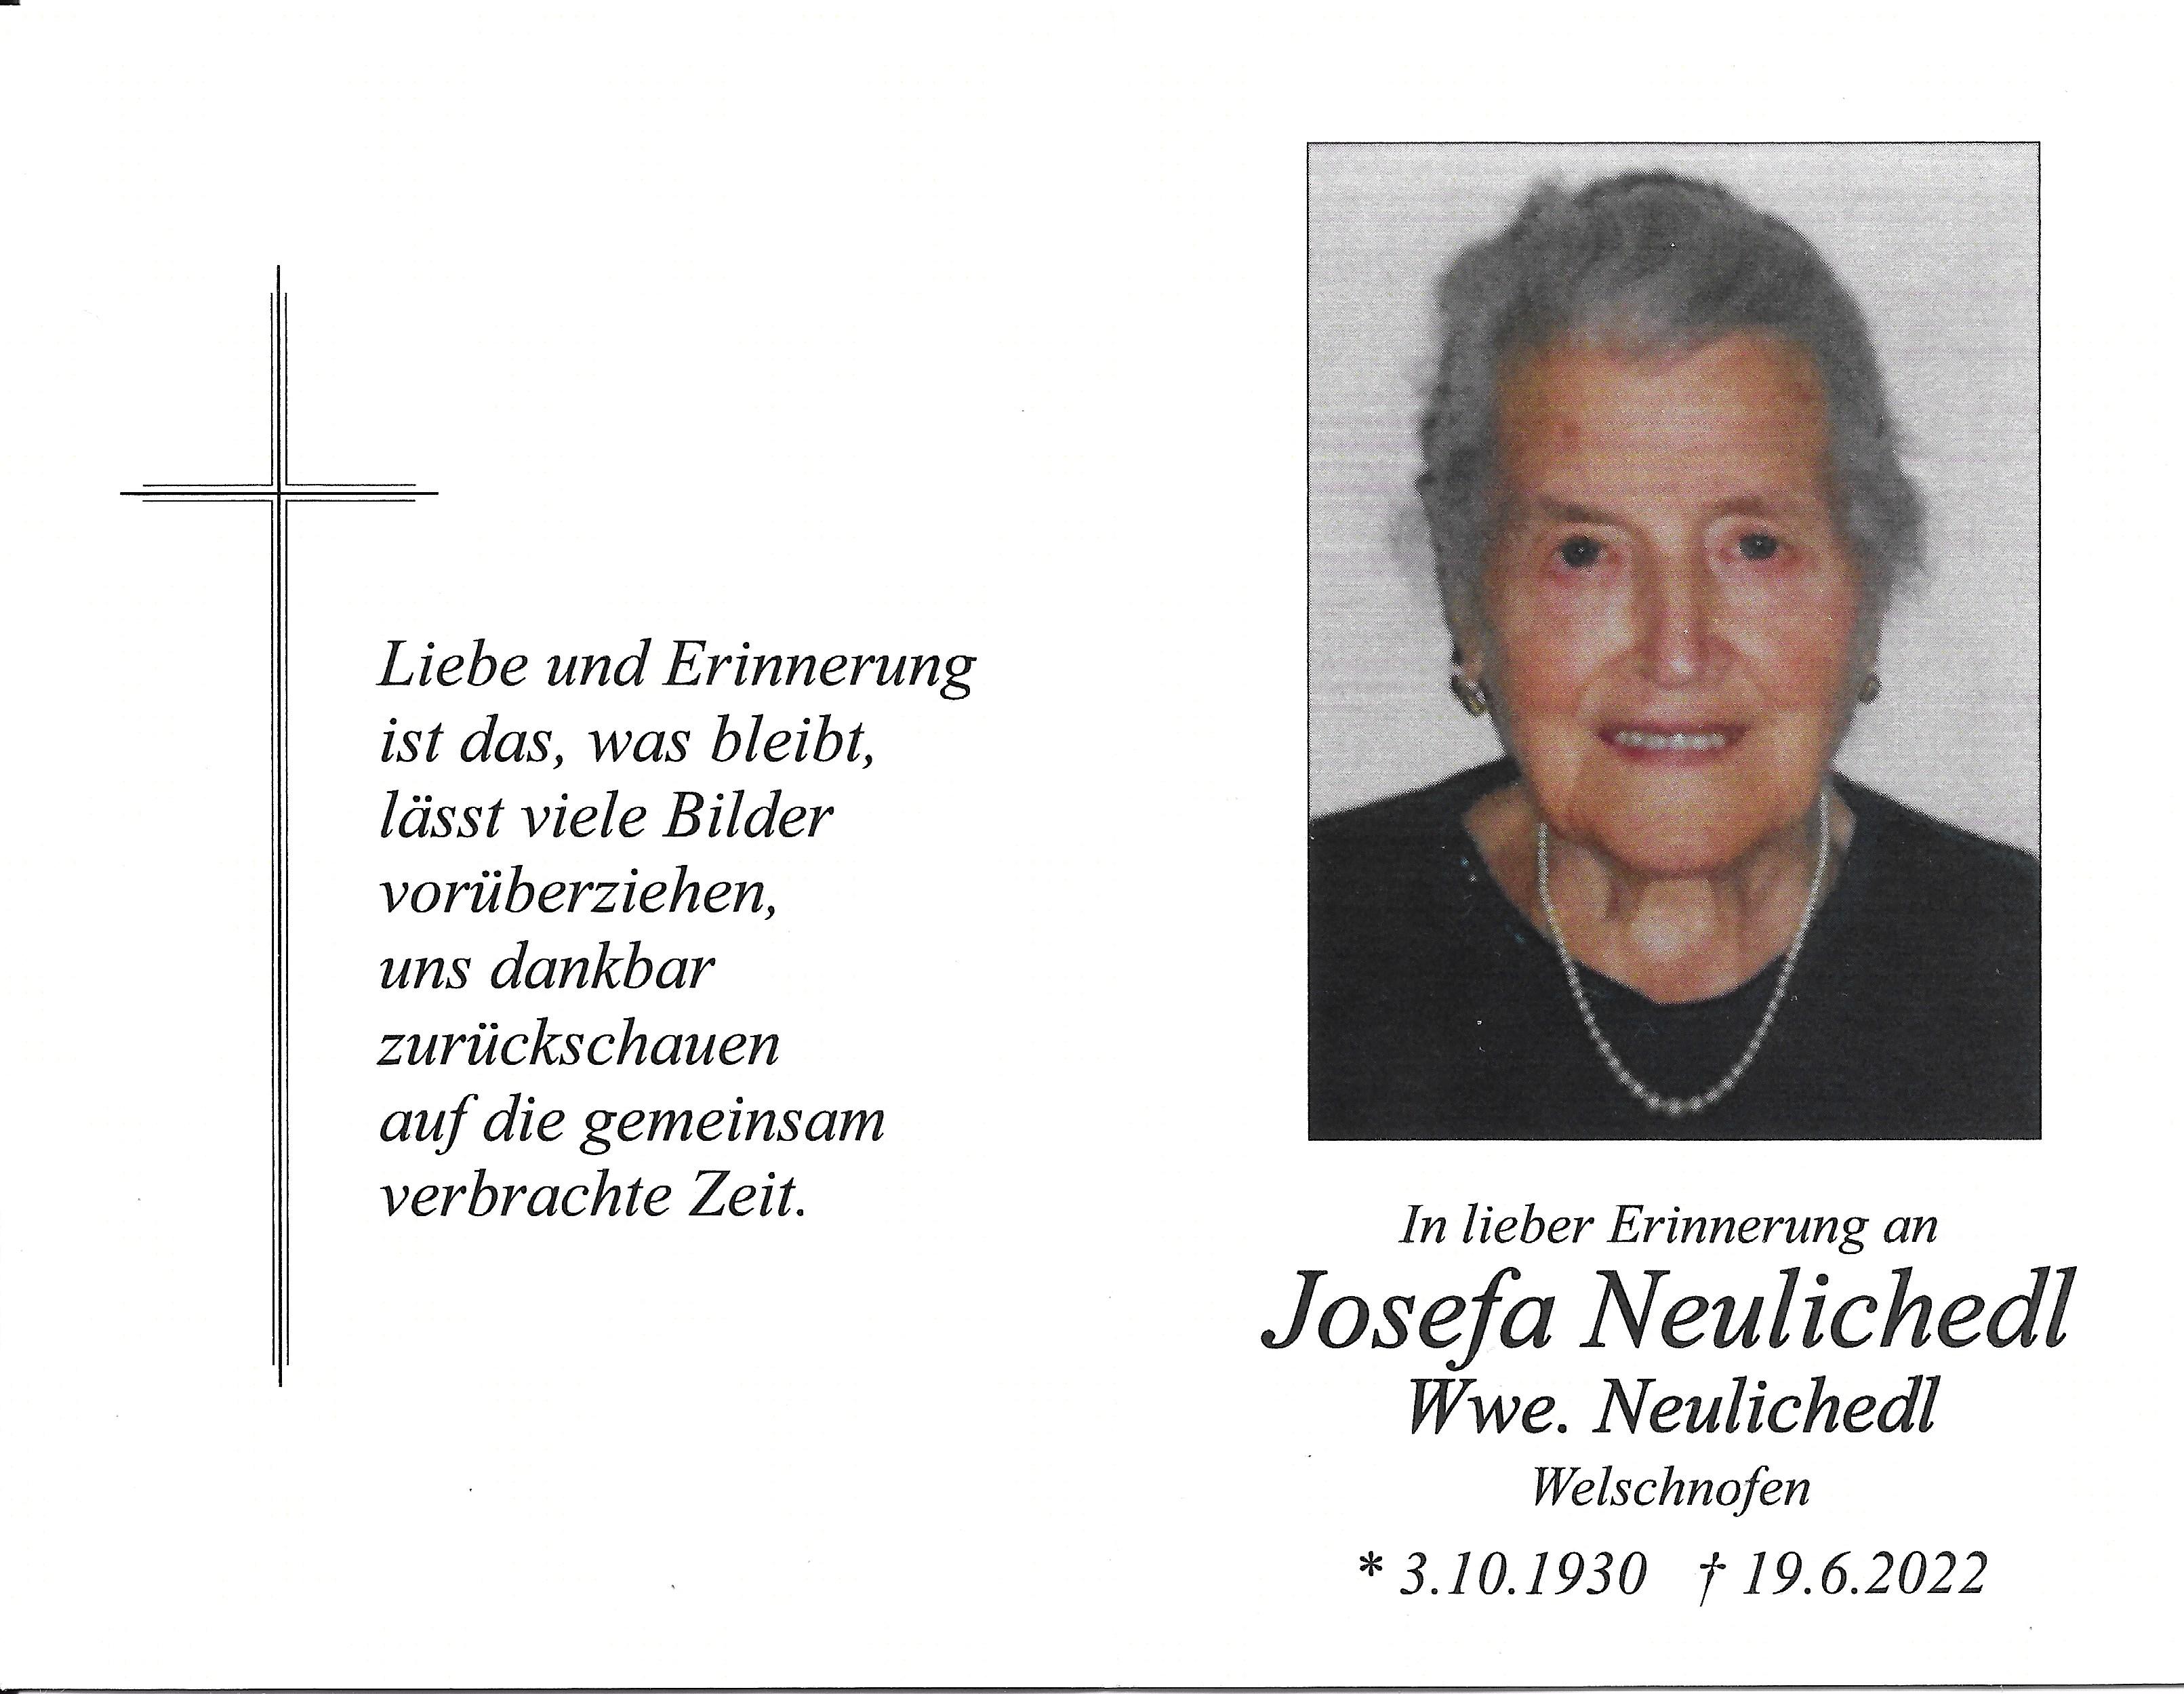 Josefa Neulichedl